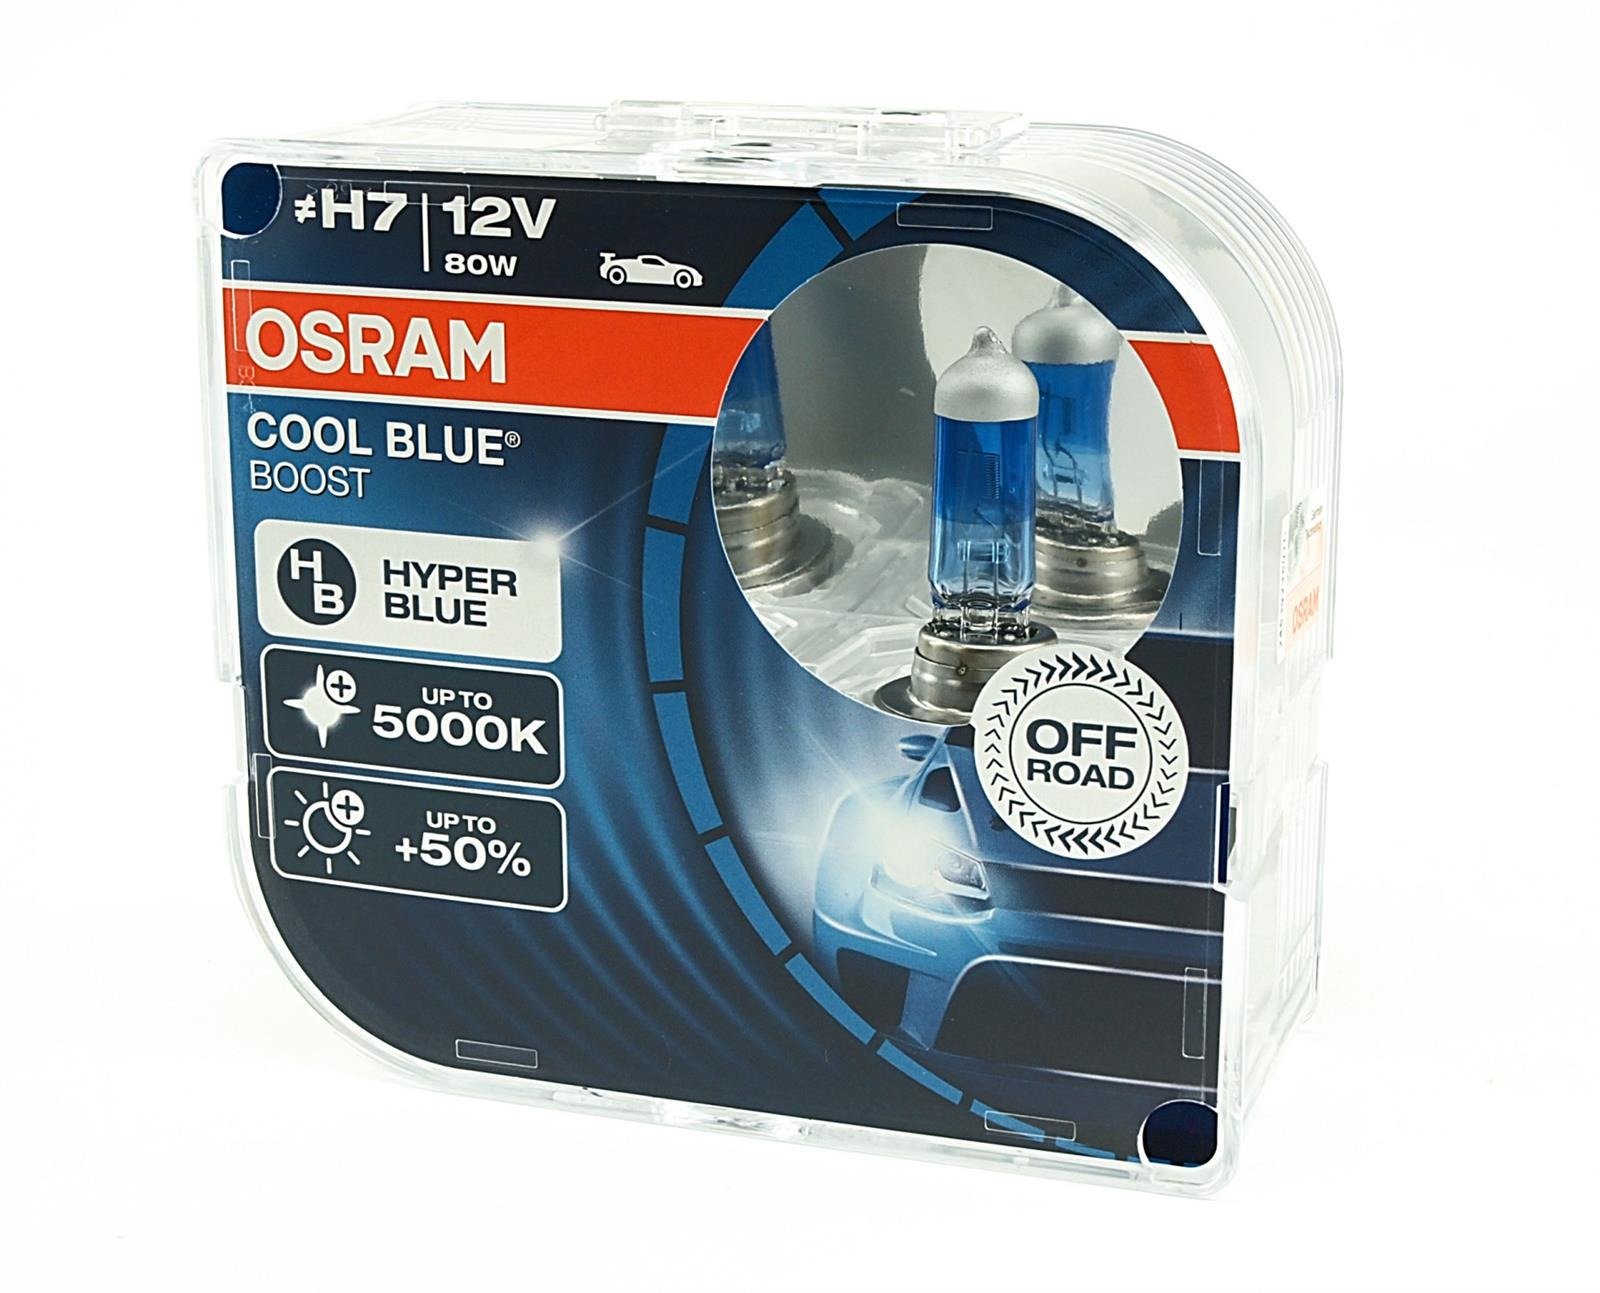 H7 12V 80W PX26d COOL Blue BOOST 5000K +50% 2pcs Osram (NO ECE